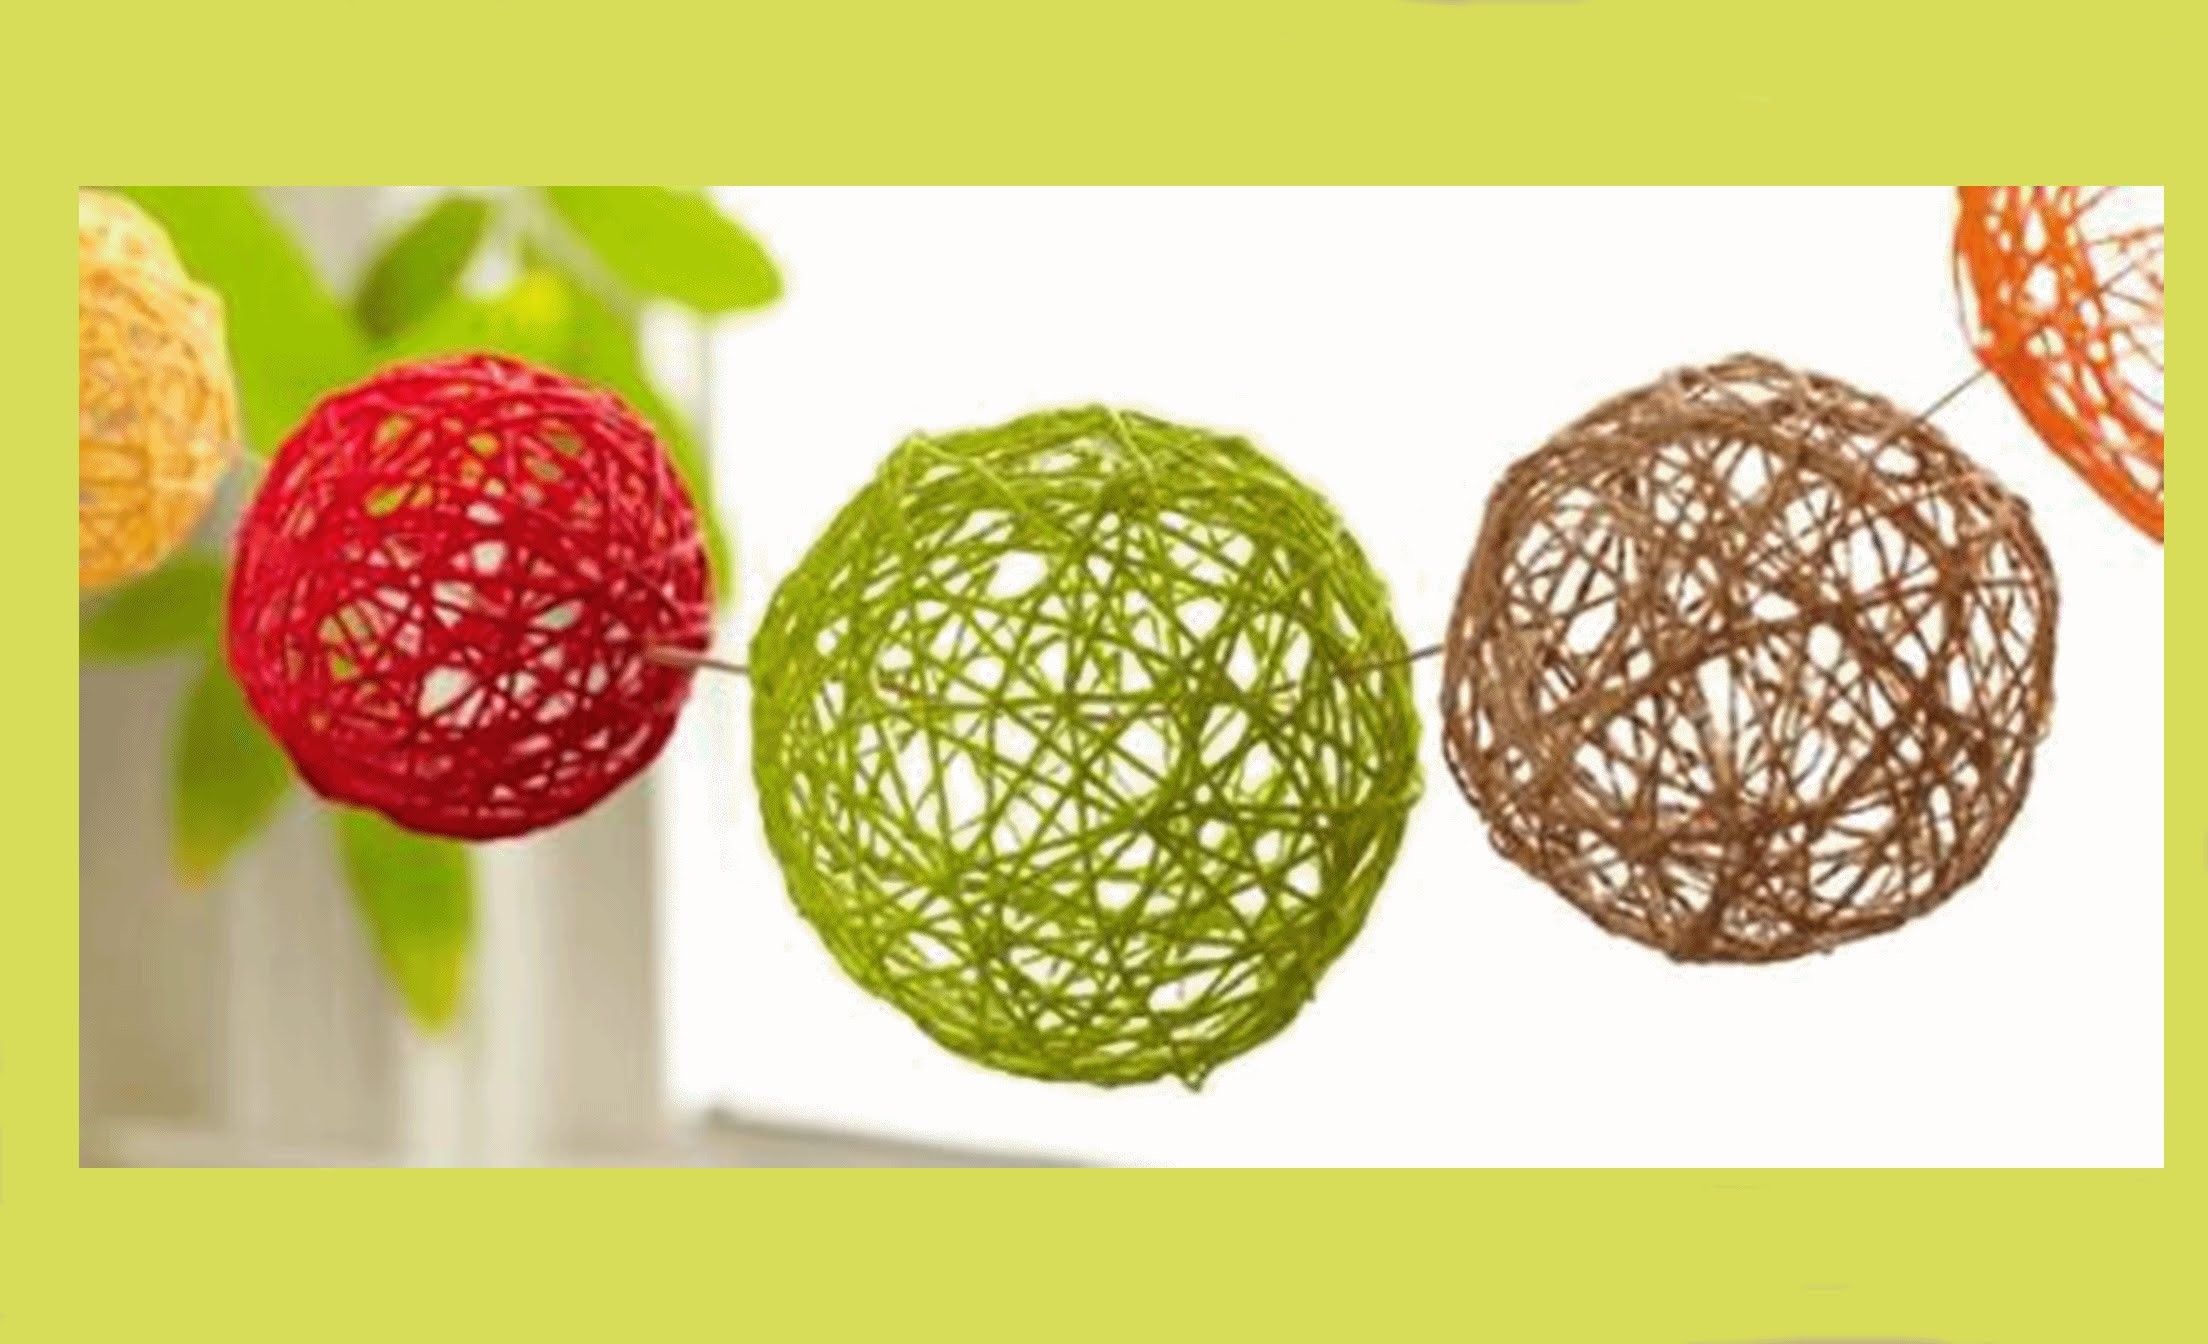 MANUALIDADES fáciles para hacer en casa: Esferas para decorar! - BeagleArts ♥.